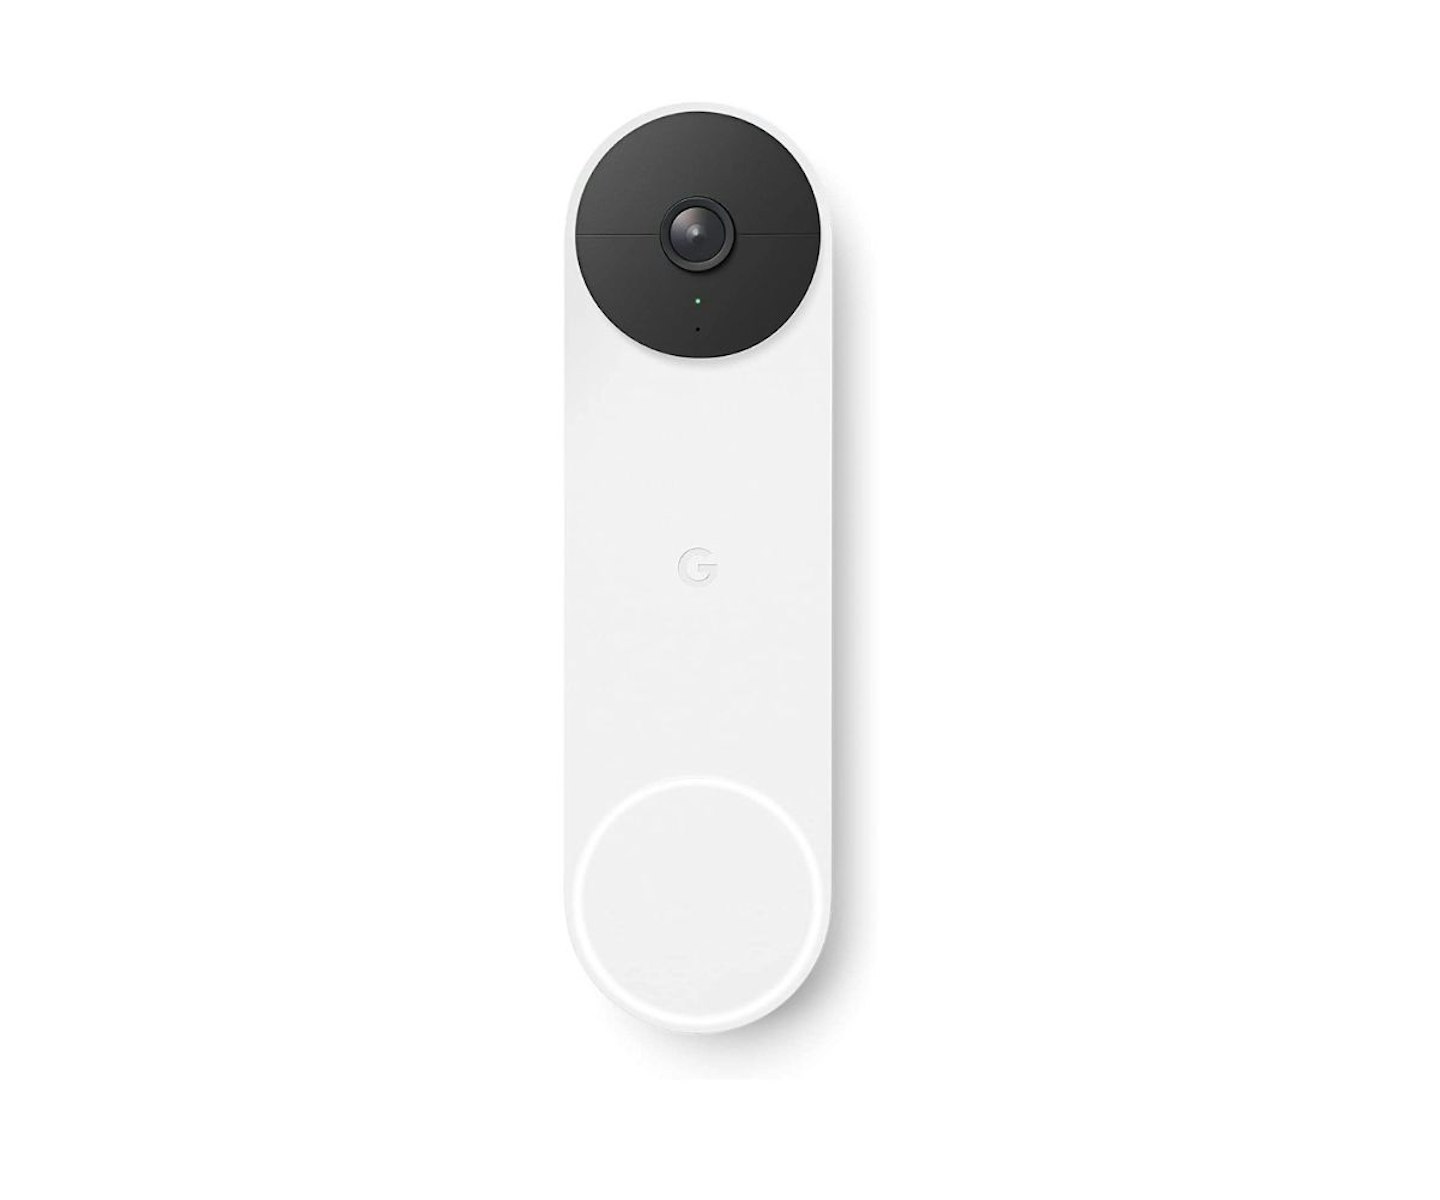 Google Nest Doorbell (Battery) Wireless Video Doorbell